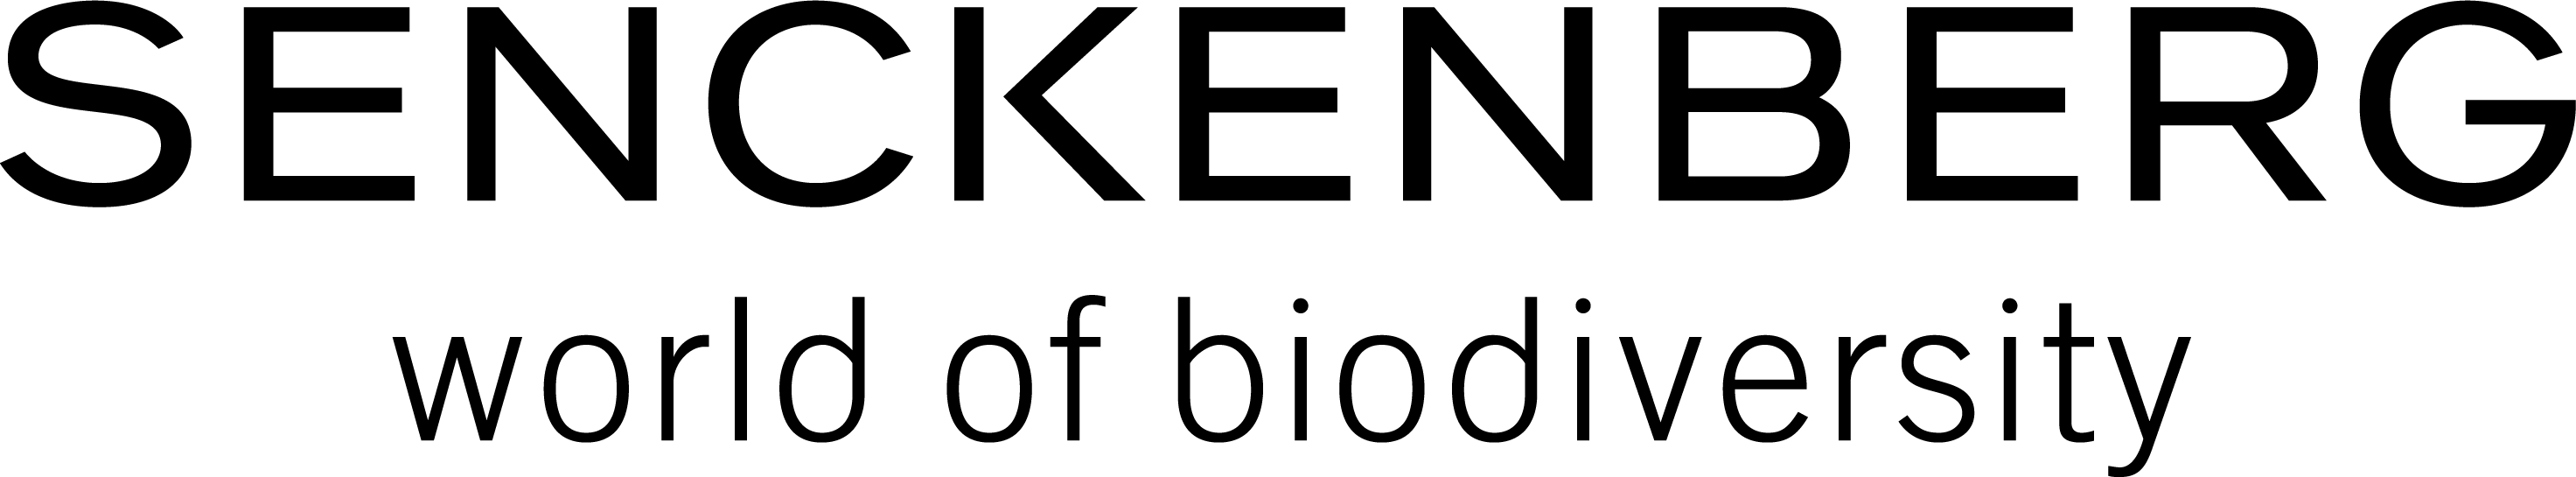 Senckenberg_Logo_Positiv.png